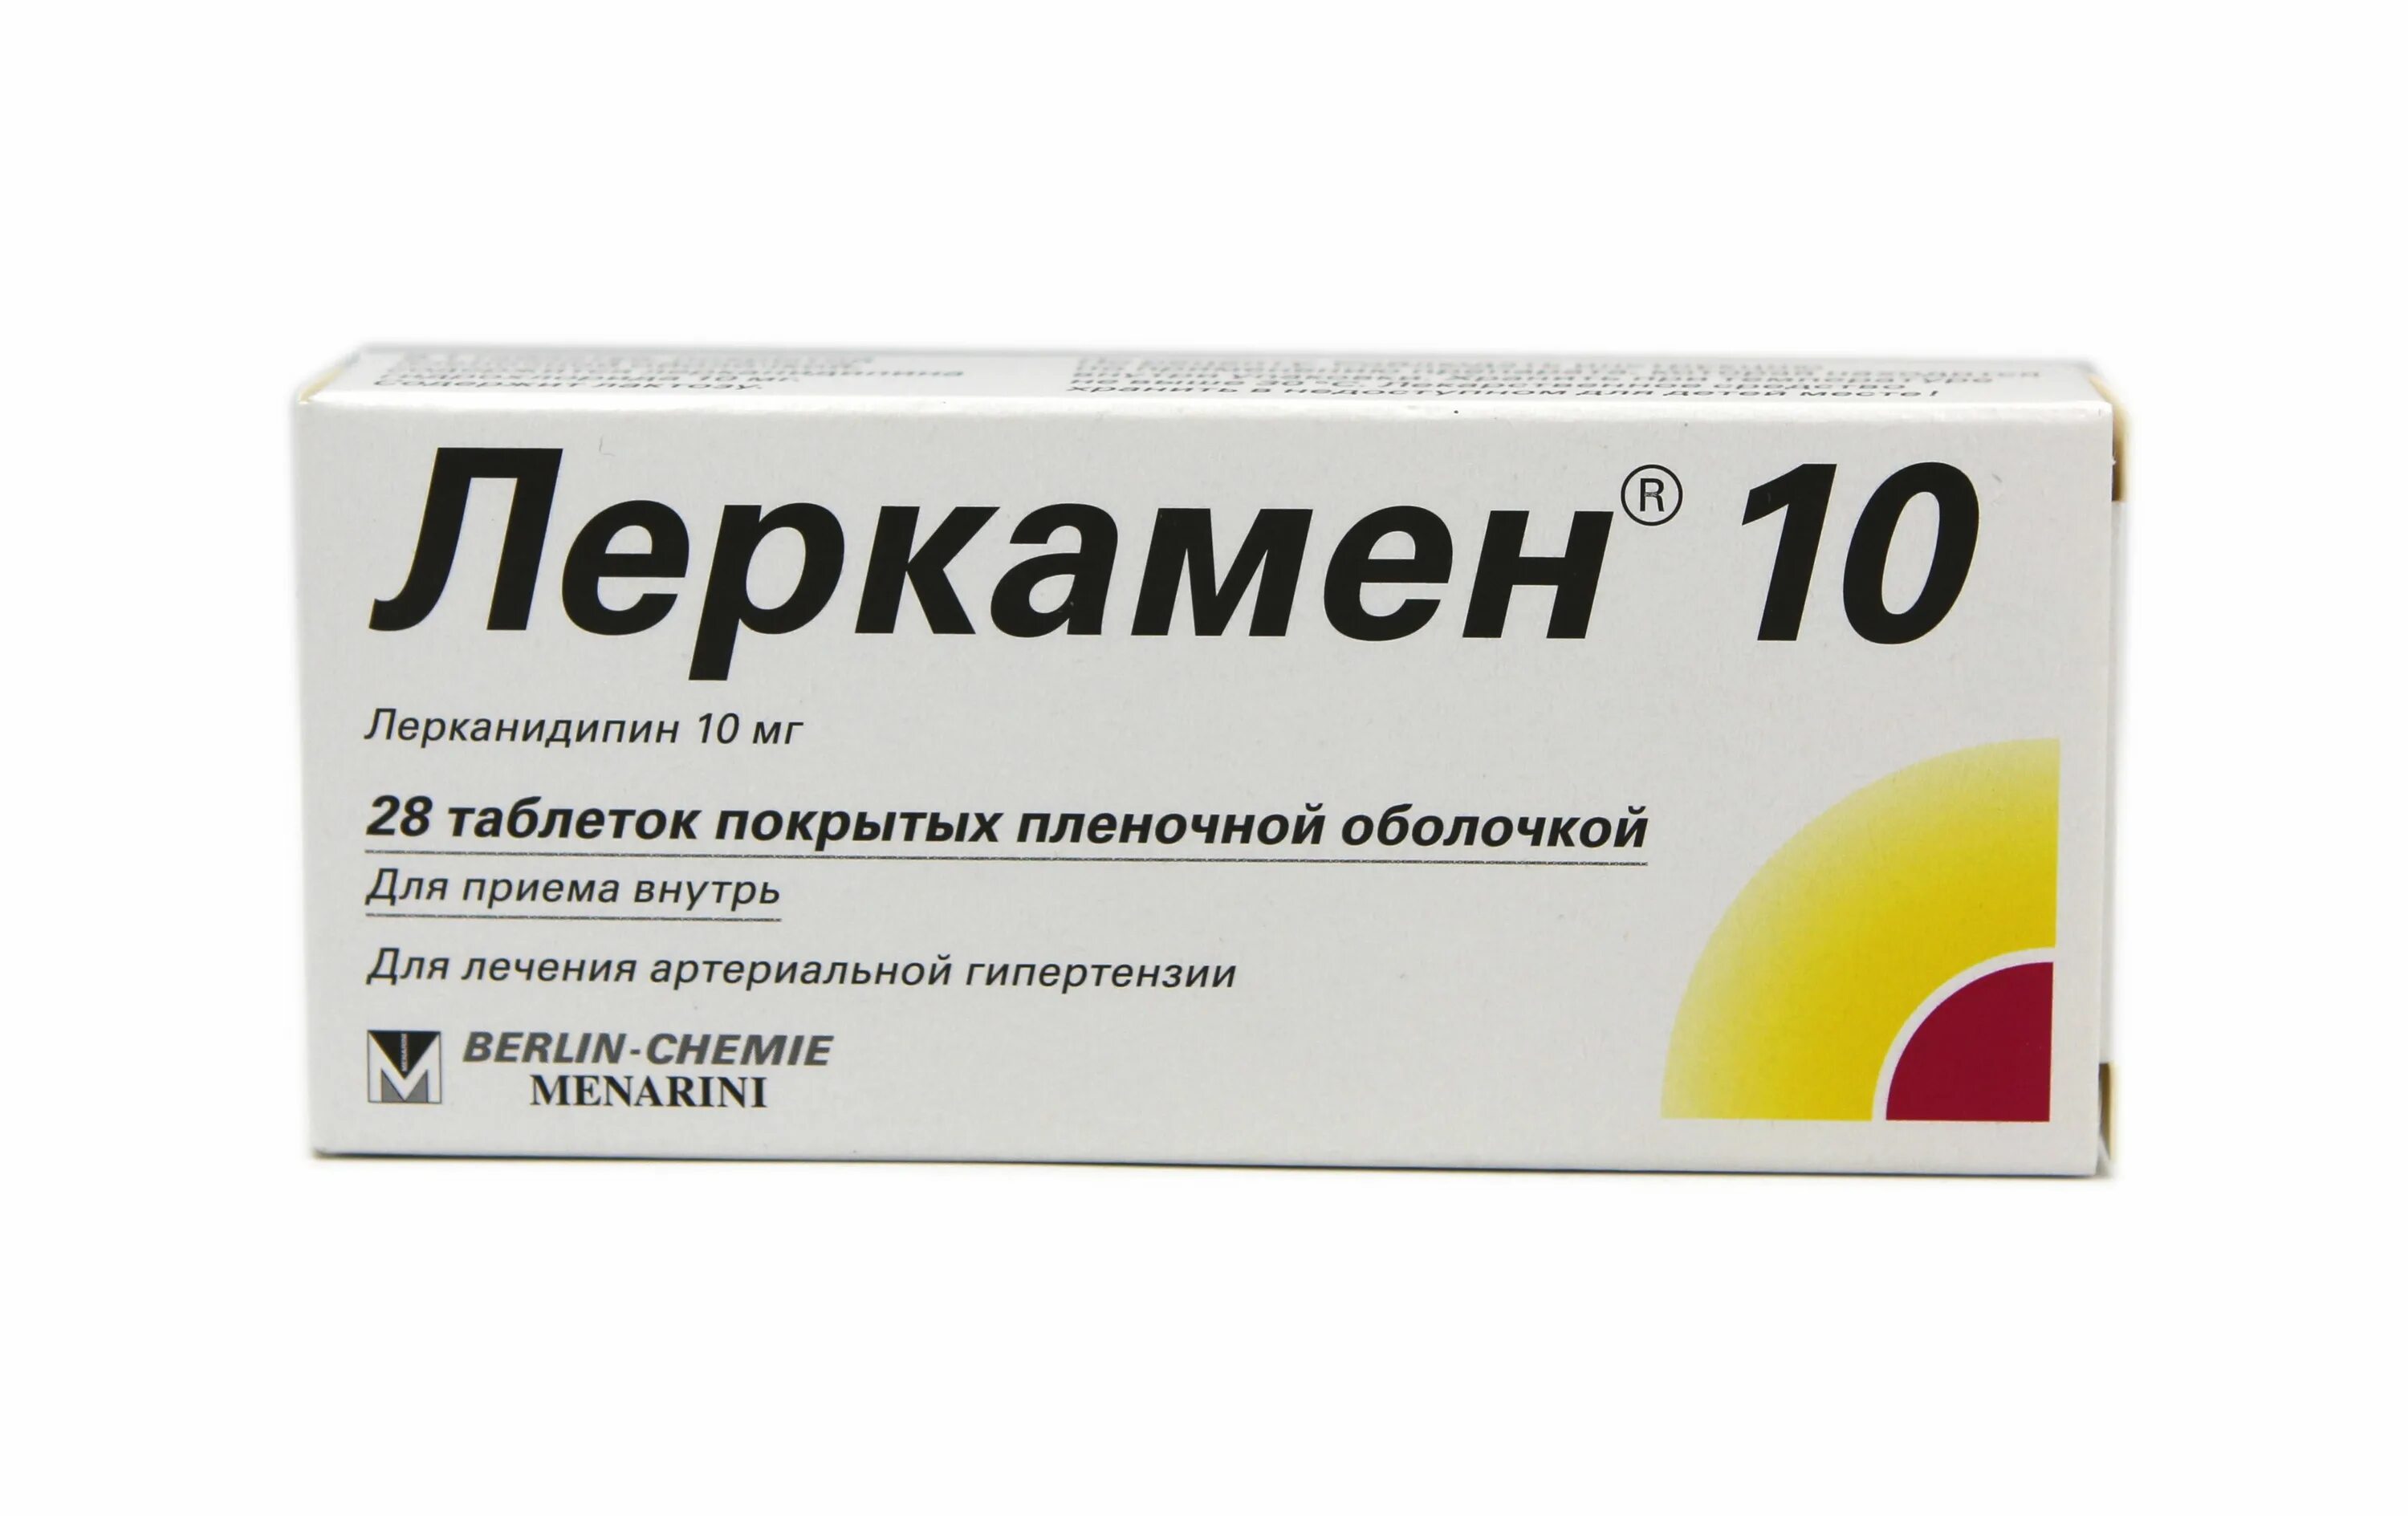 Лерканидипин 10 мг отзывы аналоги. Леркамен 10 таблетки 10мг 28шт. Леркамен дуо 10 мг. Лерканидипин (Леркамен,Занидип). Таблетки от давления Леркамен 10.